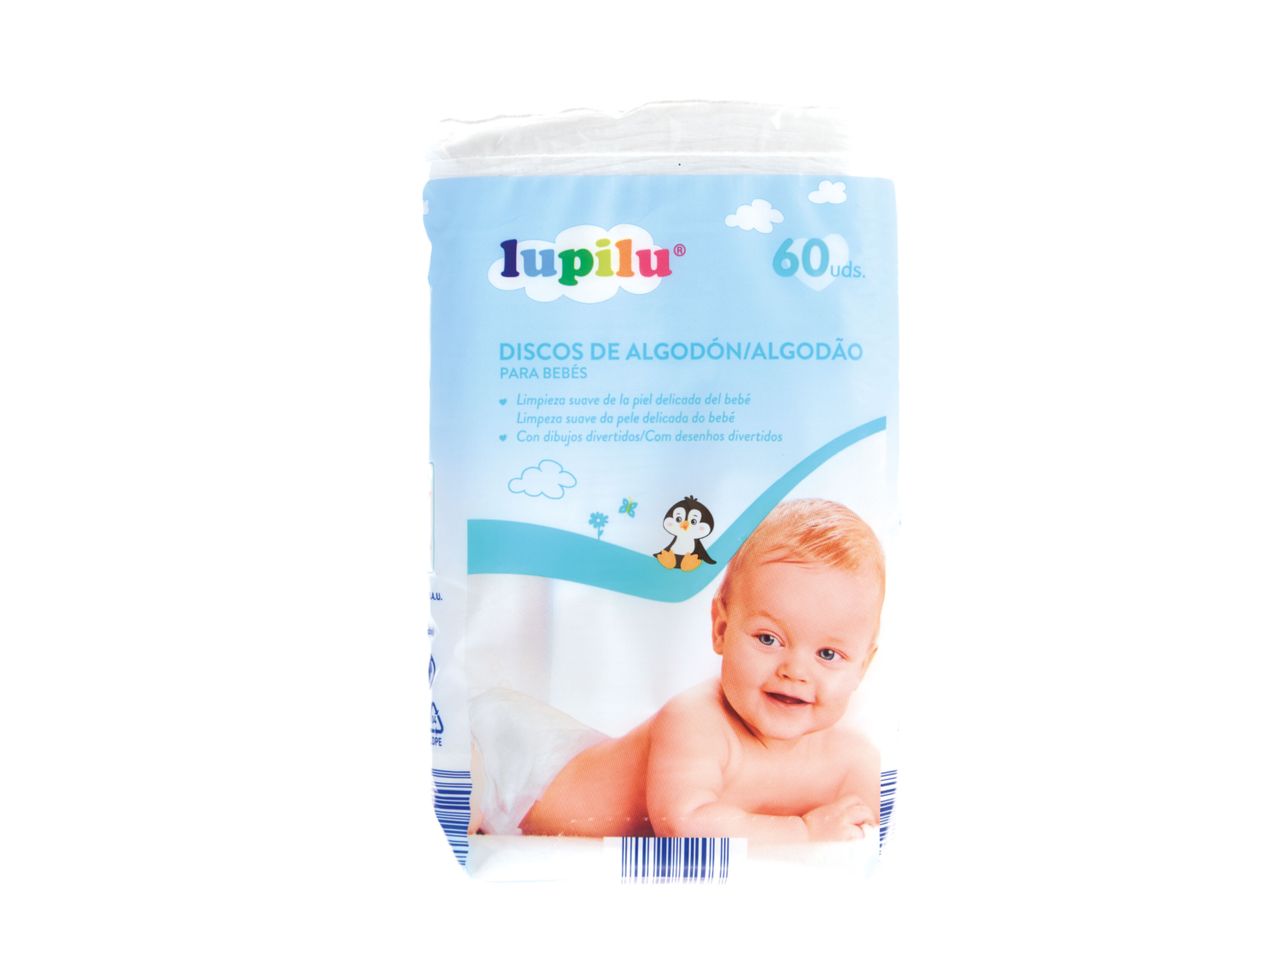 Ver empliada: Lupilu® Discos de Algodão para Bebé - Imagem 1